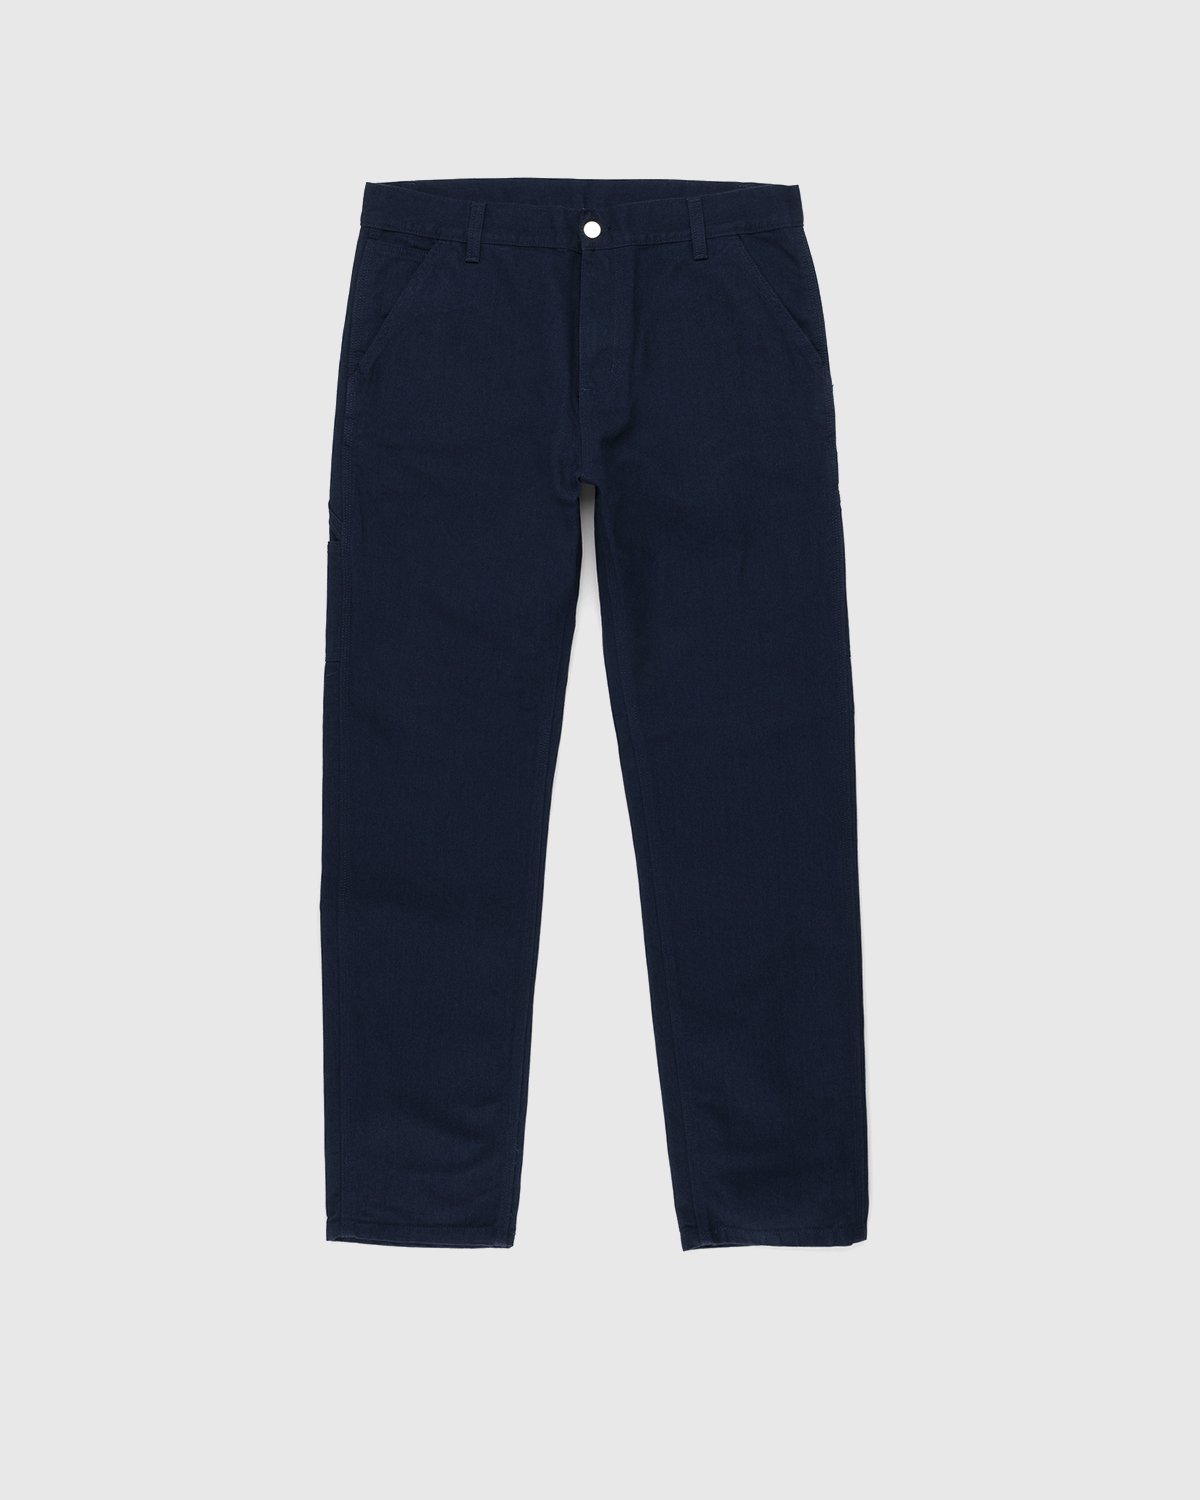 Carhartt WIP - Ruck Single Knee Pant Dark Navy - Clothing - Blue - Image 1